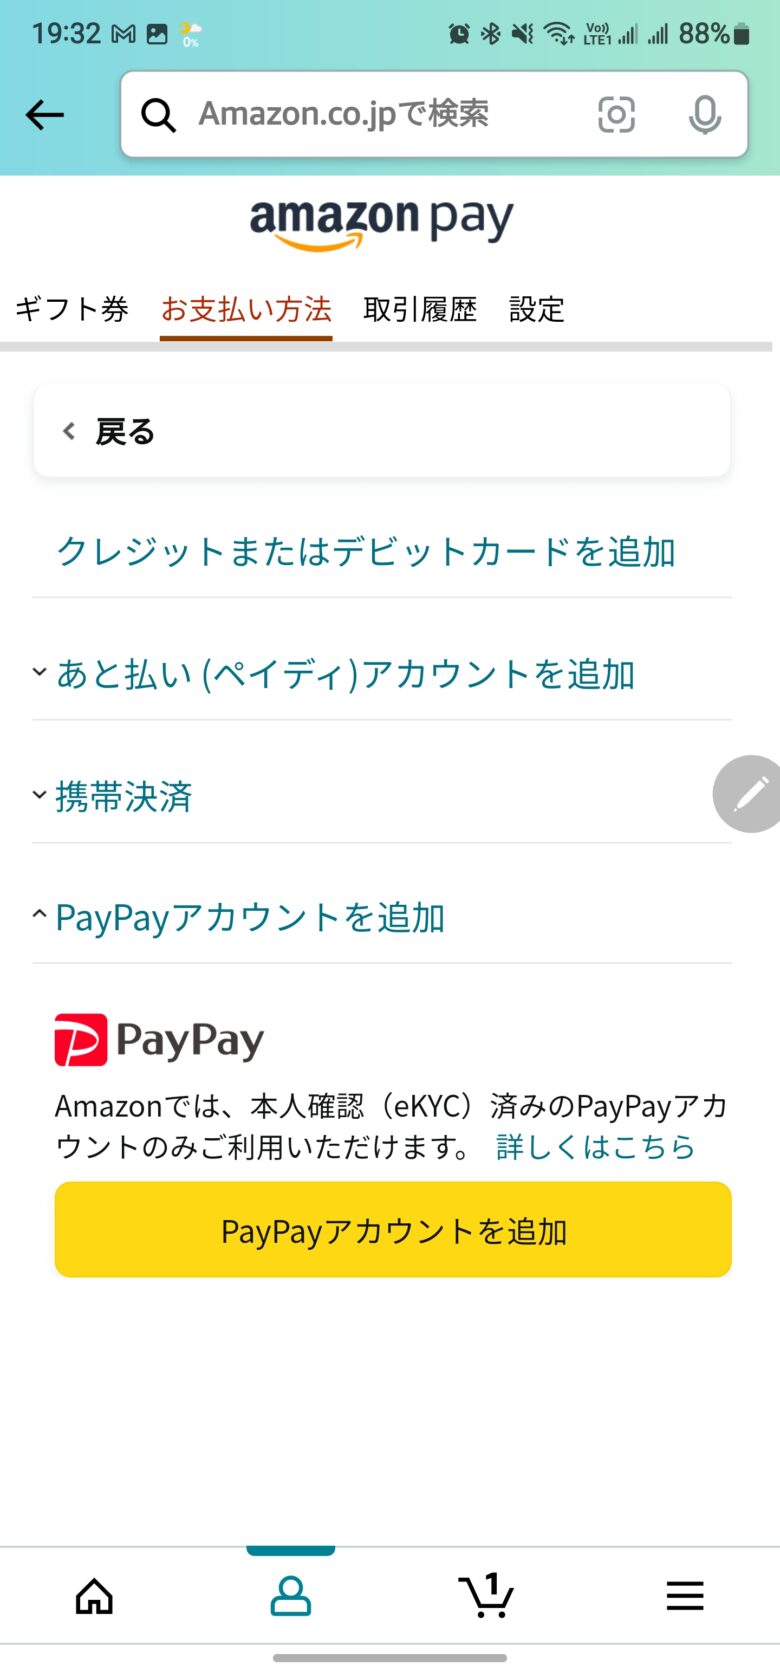 AmazonでPayPay支払いを登録する方法。Amazonの支払い方法設定画面その4。